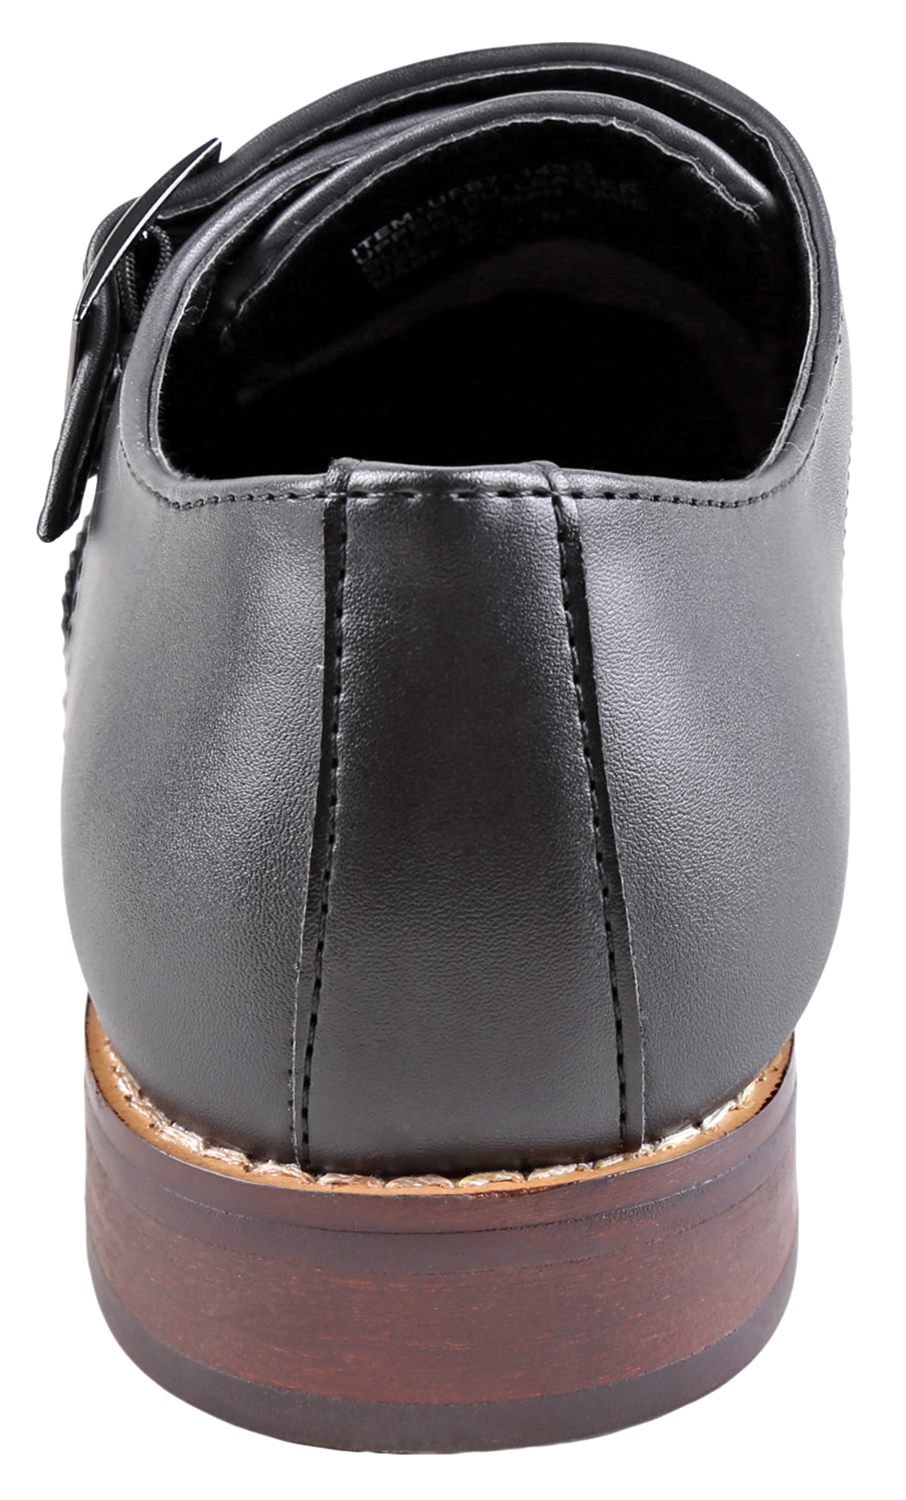 Urban Fox Allen Men's Dress Shoe | Double Monk Strap | Brogue | Wingtip Shoes for Men | Black 11 M US - image 4 of 7